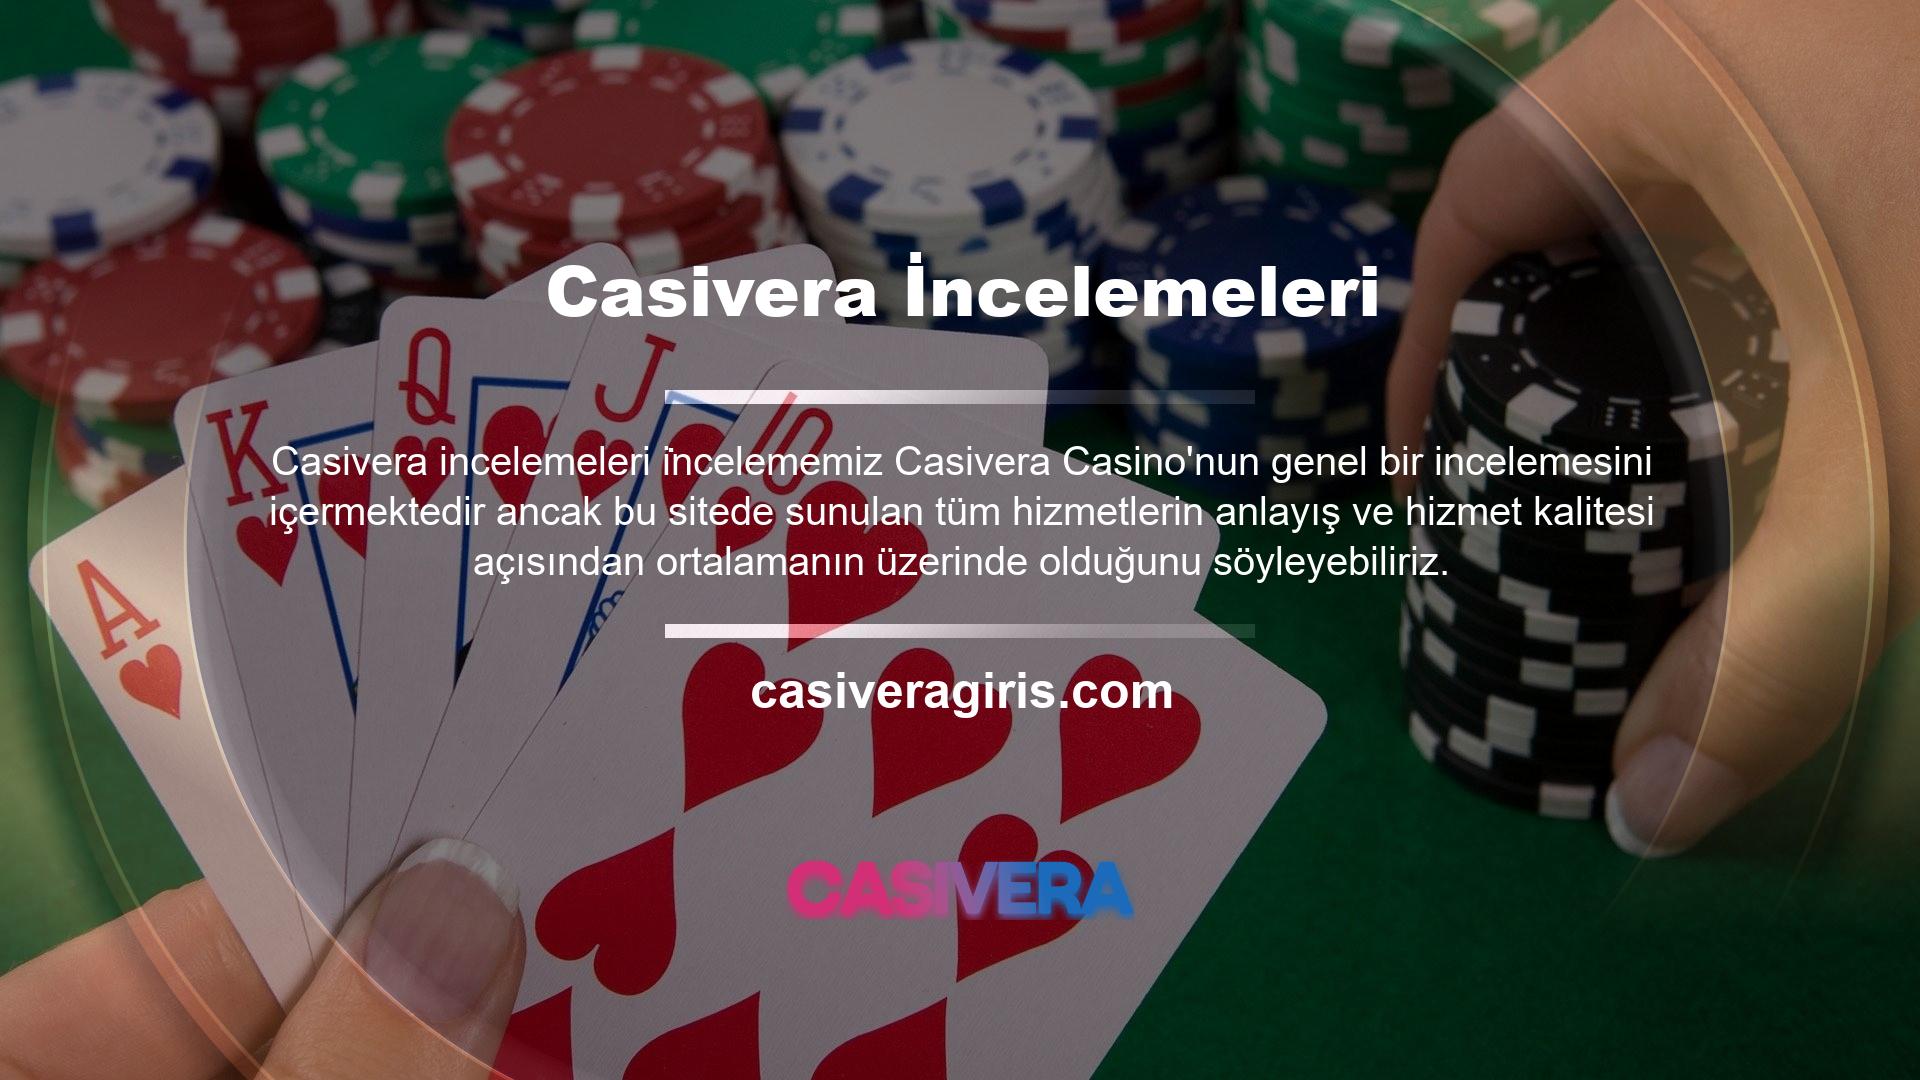 Casivera Casino kullanıcıları için para yatırma, çekme, canlı destek ve daha fazlası